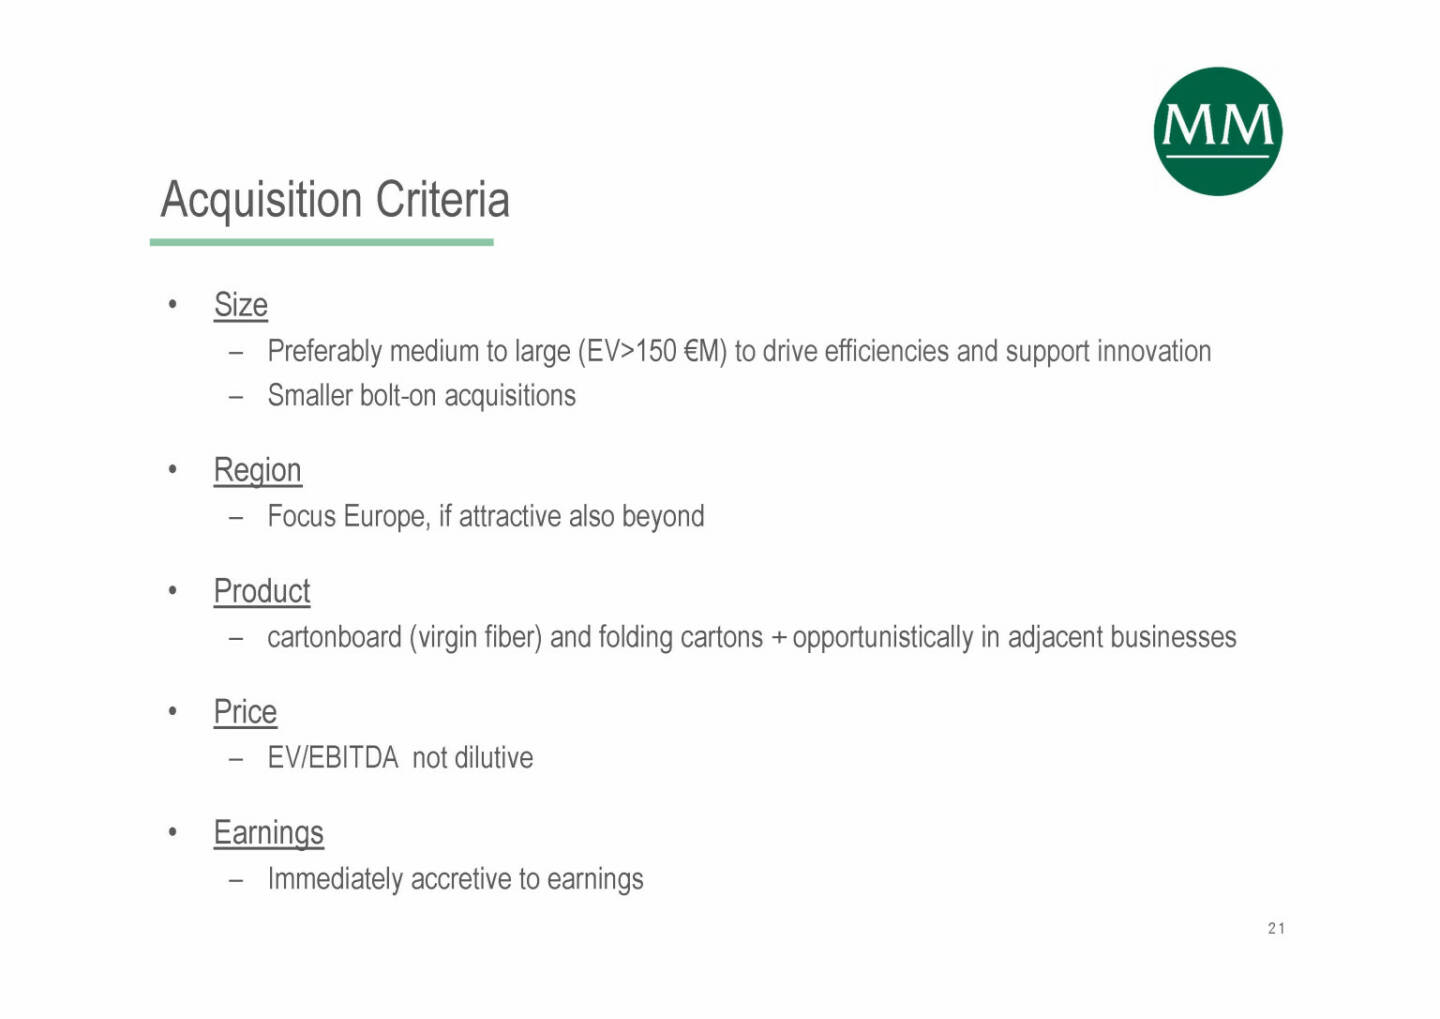 Mayr-Melnhof - Acquisition Criteria